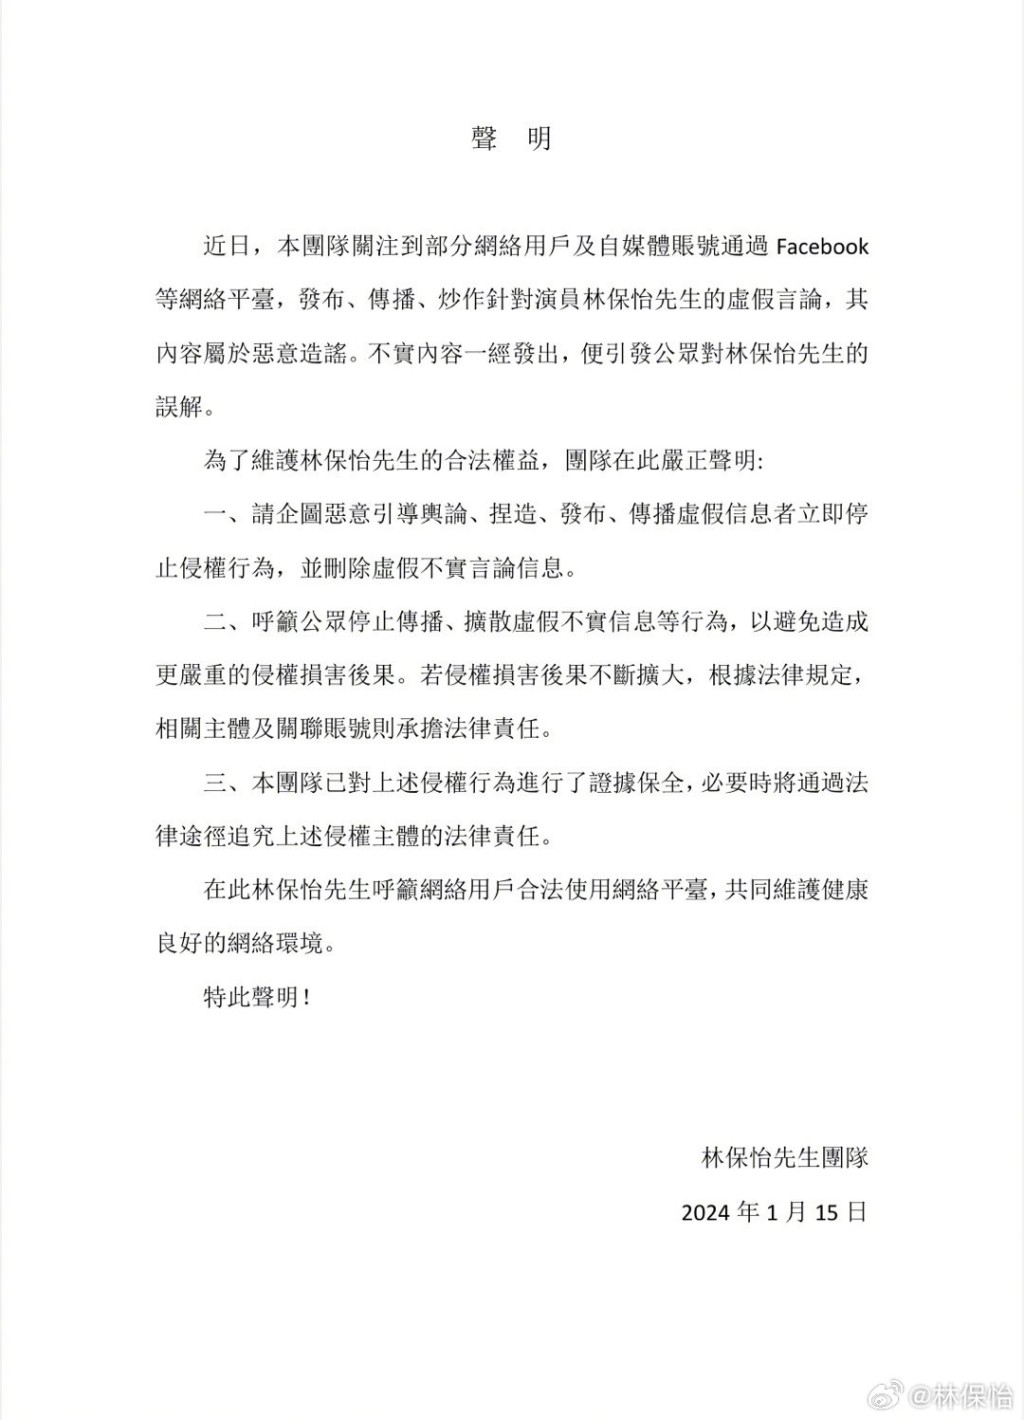 林保怡在微博发声明否认同性结婚。